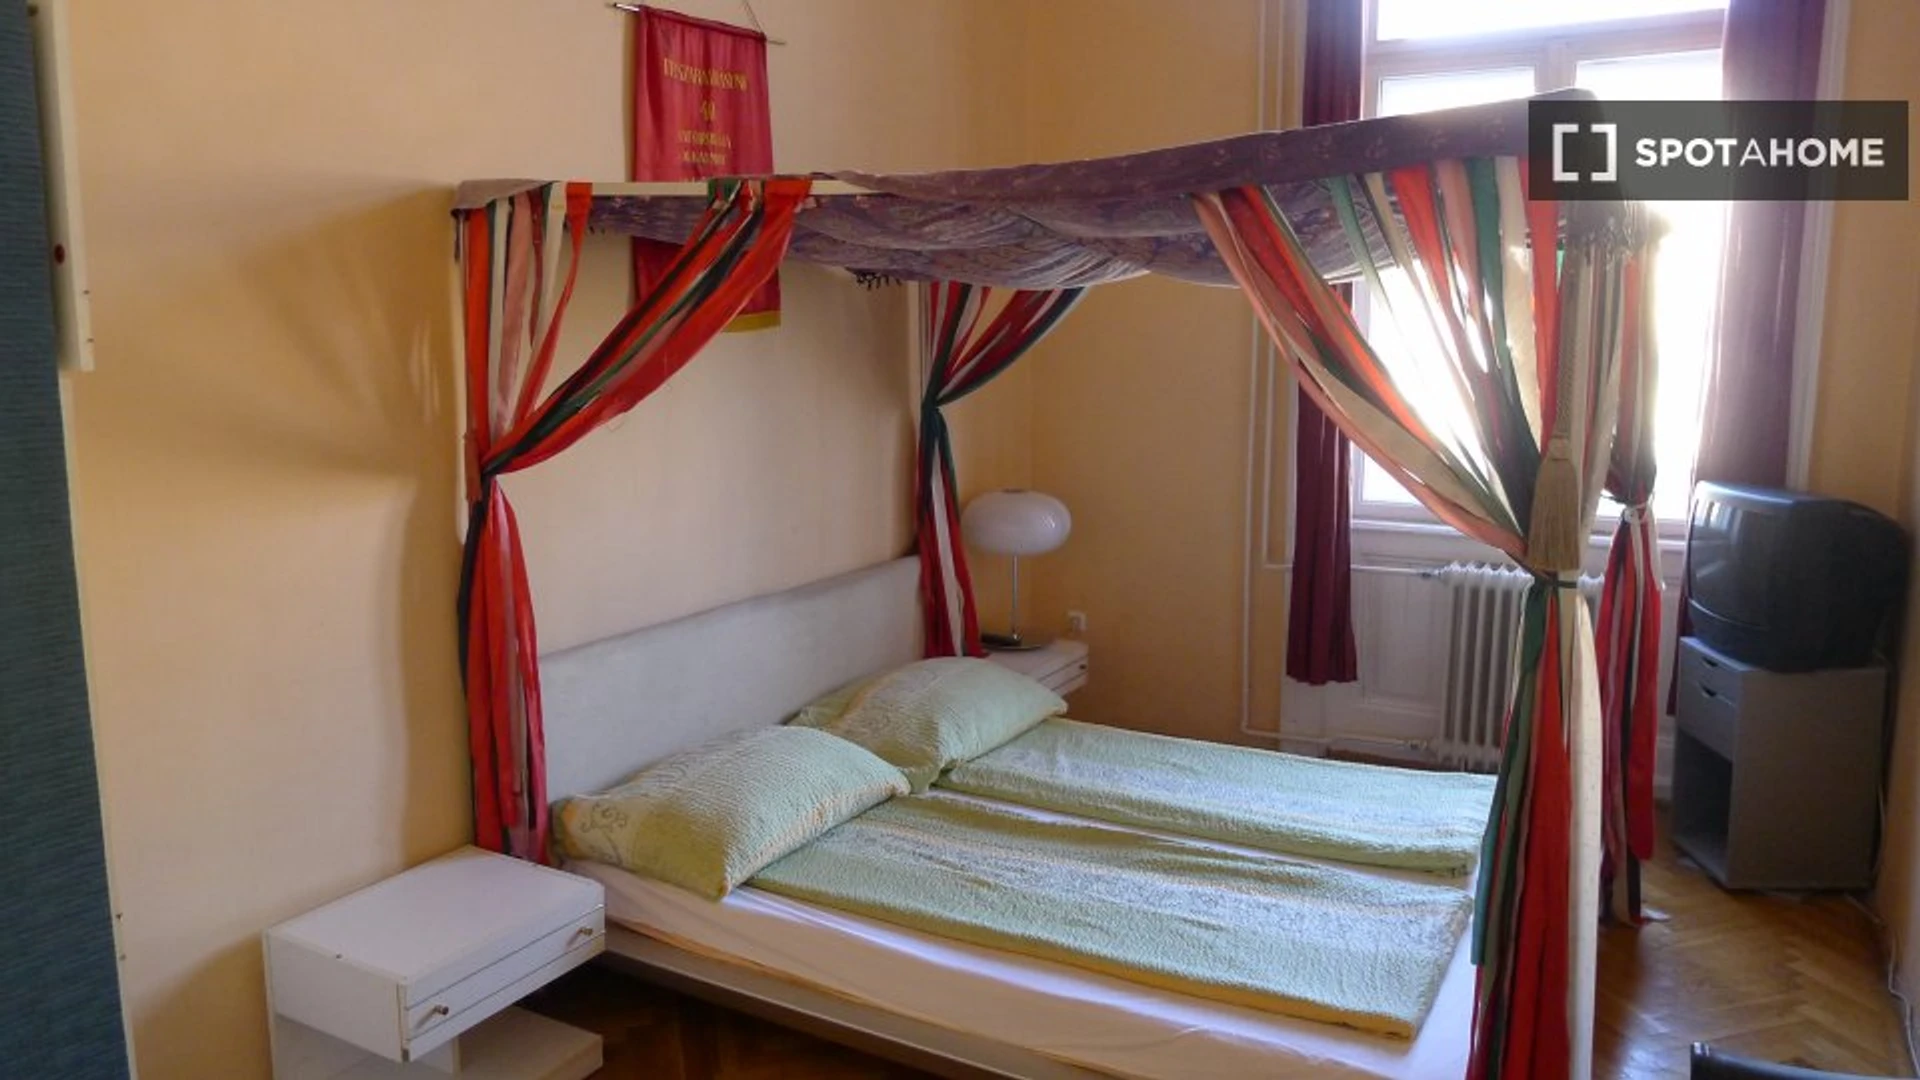 Chambre à louer avec lit double Budapest